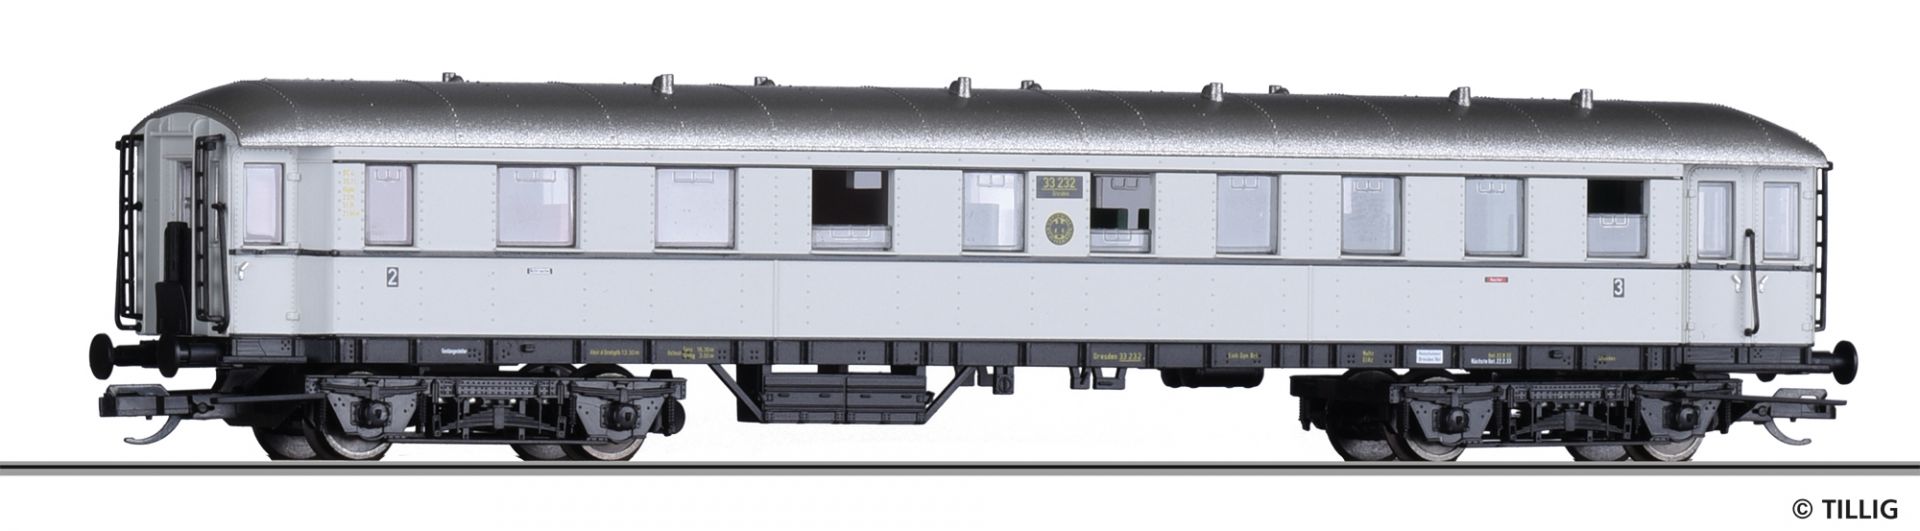 501947 | Reisezugwagen DRG -werksseitig ausverkauft-